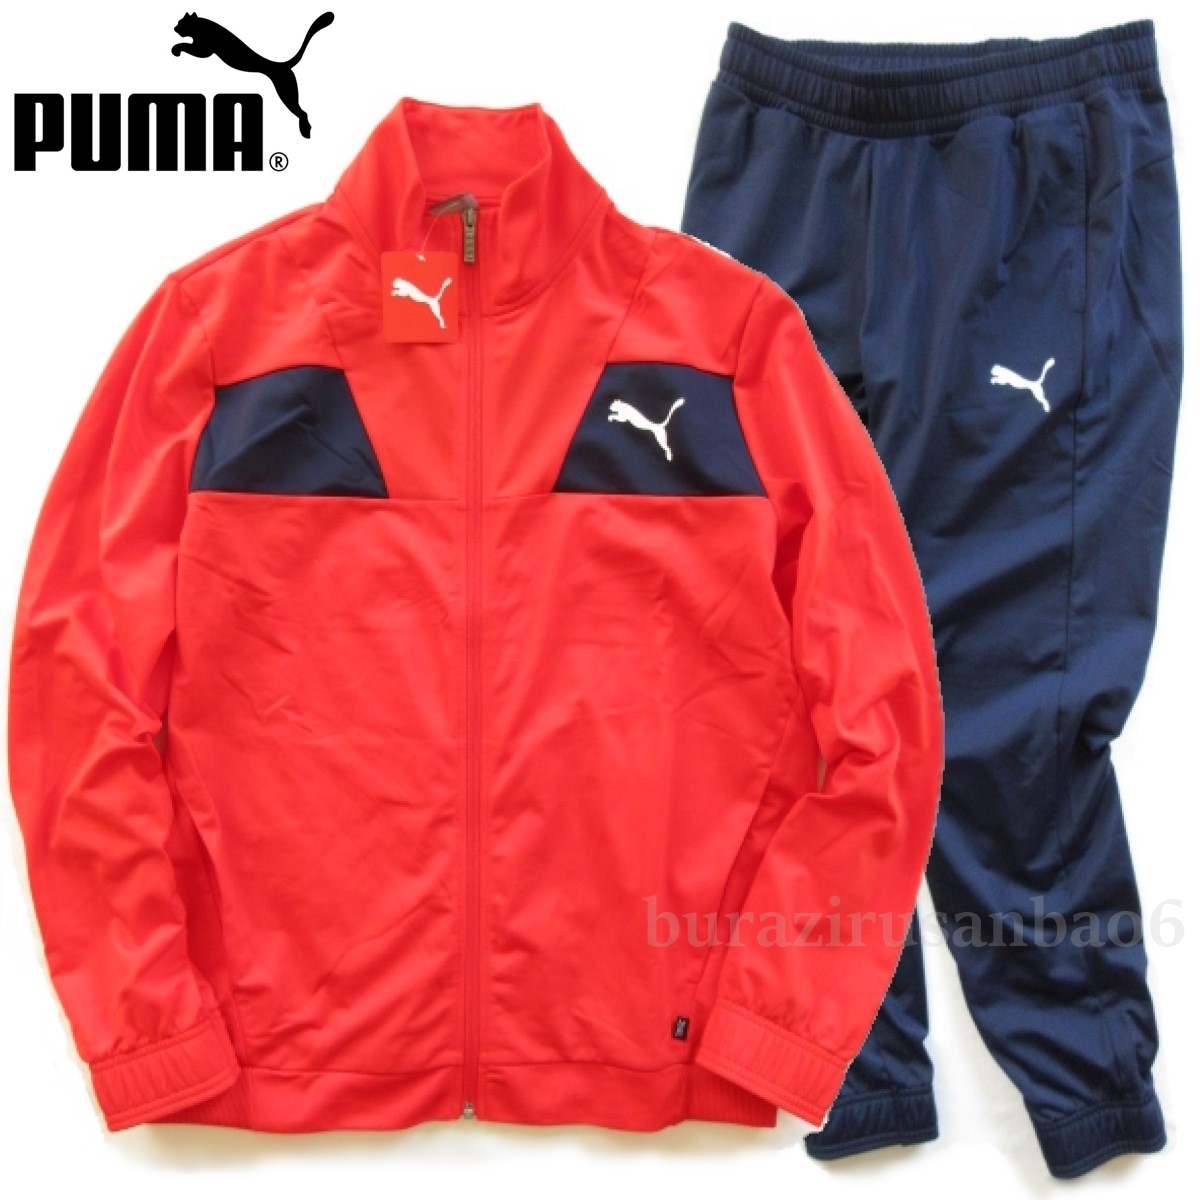 新品◆PUMA プーマ トレーニング 上下 テックストライプ トリコットスーツ ジャージ ジャケット パンツ セットアップ メンズ US/M 日本L_画像1